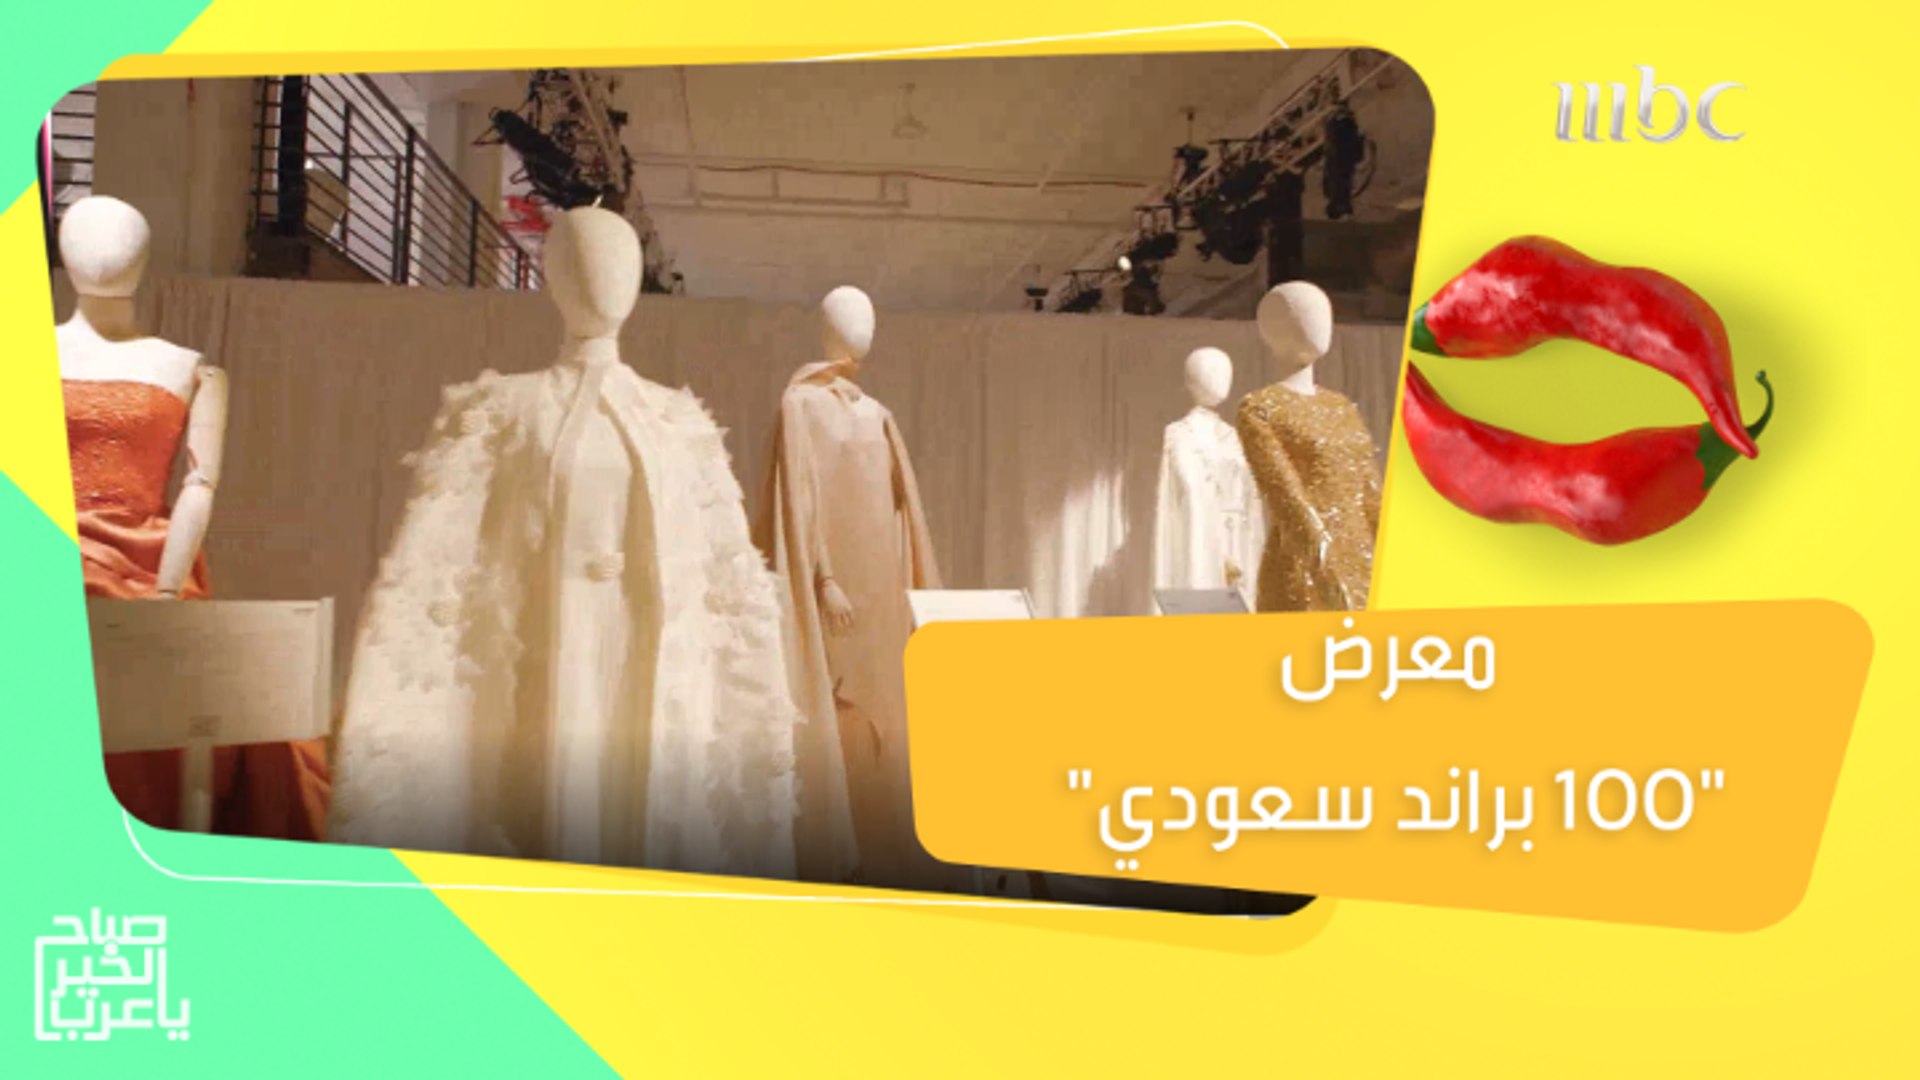 هيئة الأزياء تنظم معرض"100 براند سعودي" في مدينة نيويورك..التفاصيل مع ميمي  رعد - فيديو Dailymotion